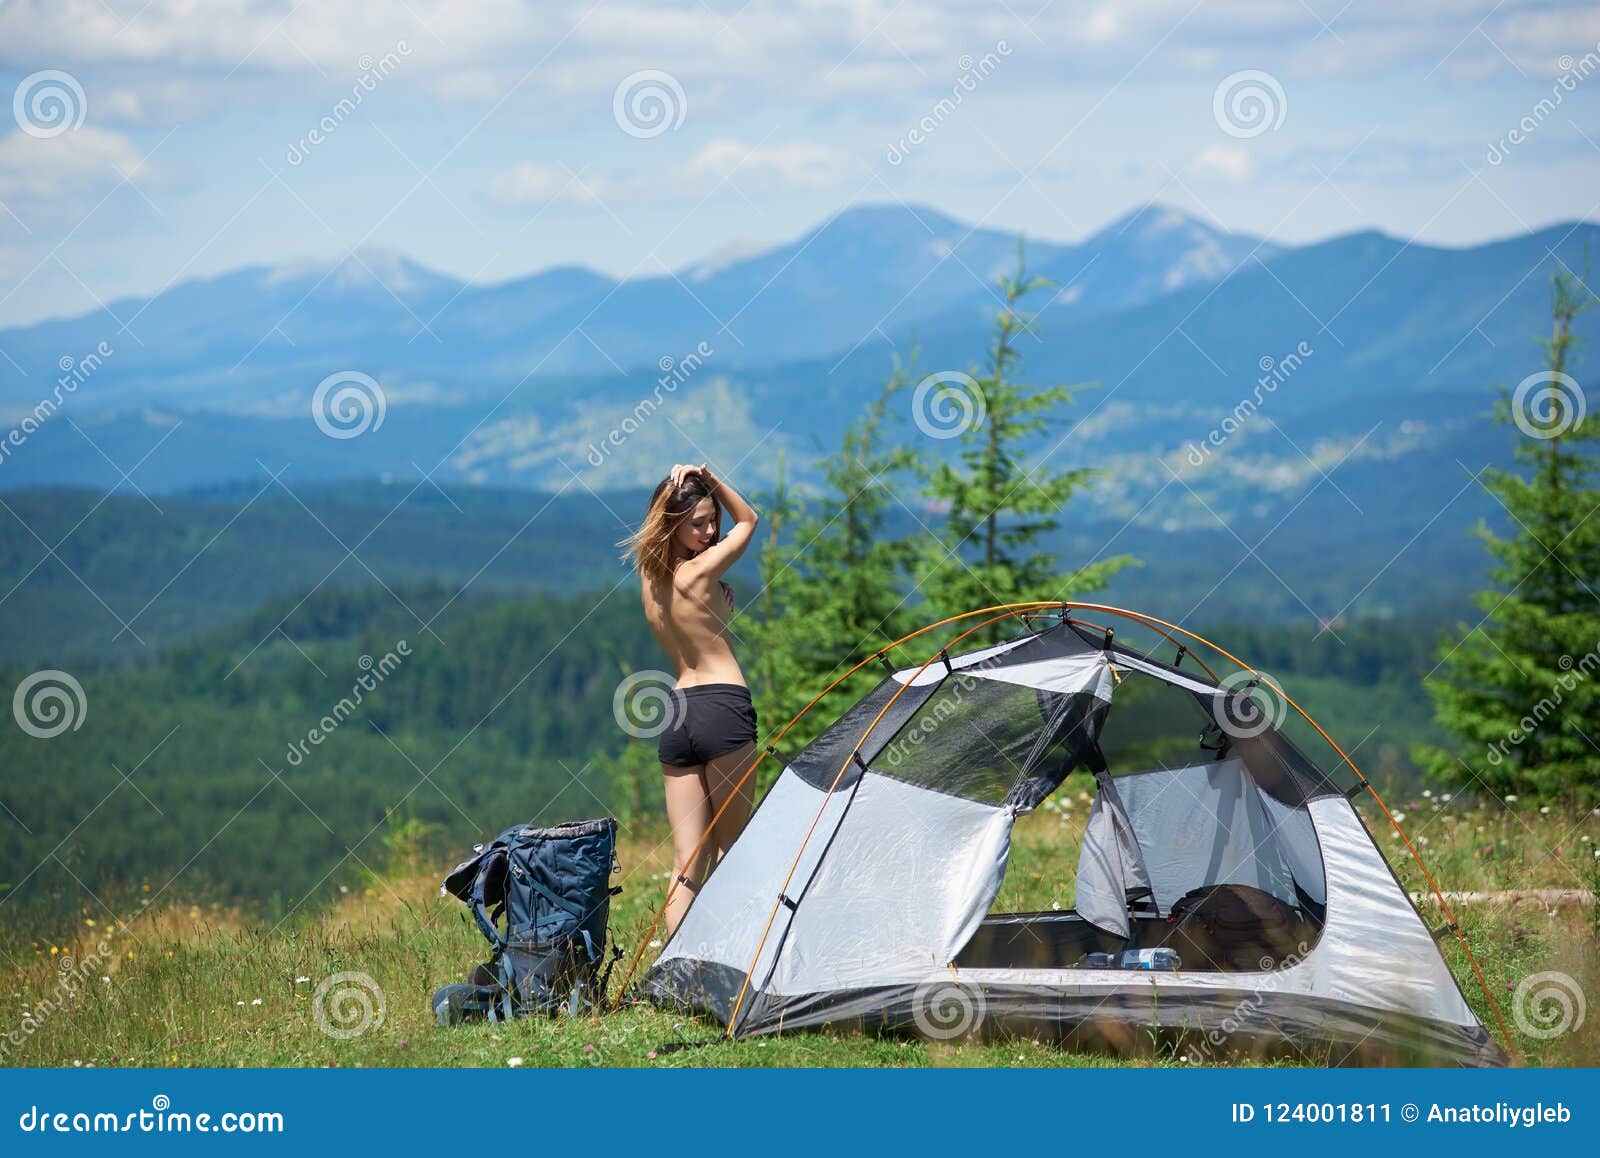 camping naked pics